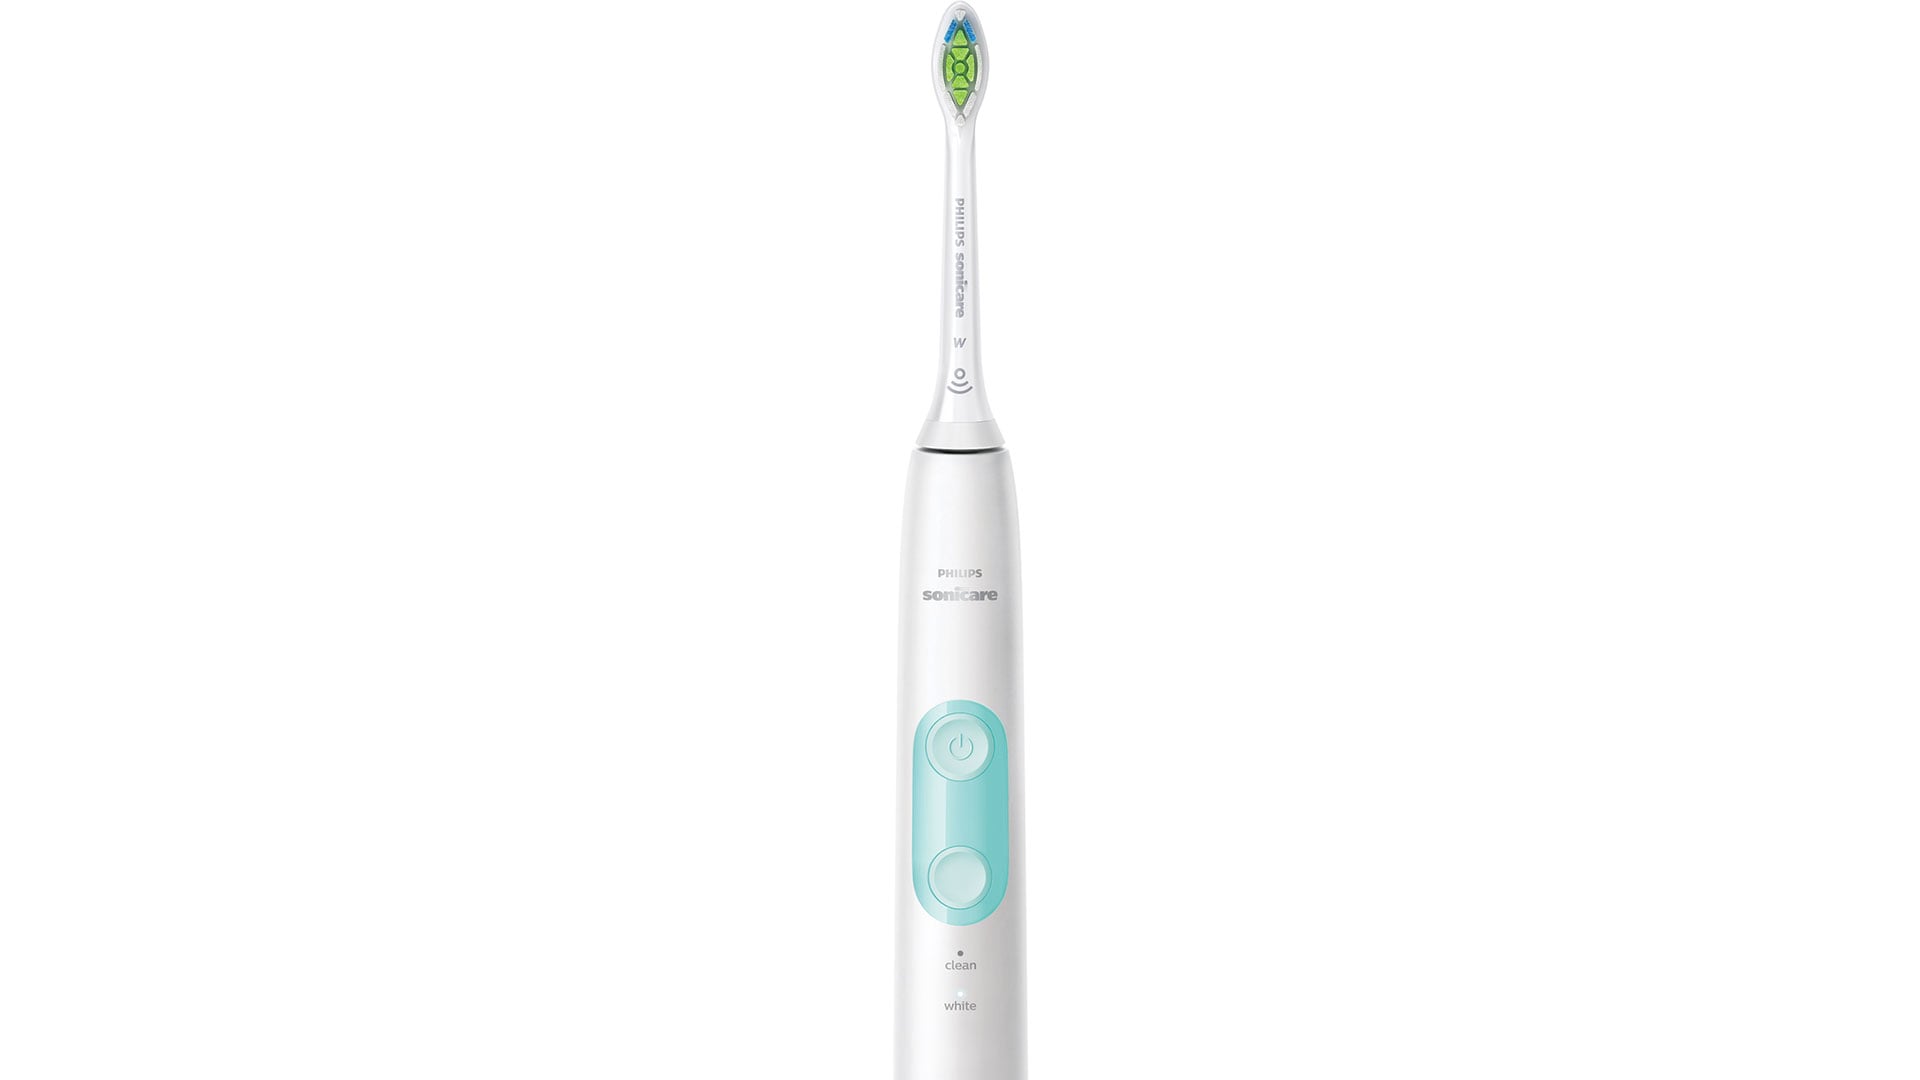 spazzolino; spazzolino elettrico; Philips Sonicare; world oral health day; igiene orale, denti bianchi